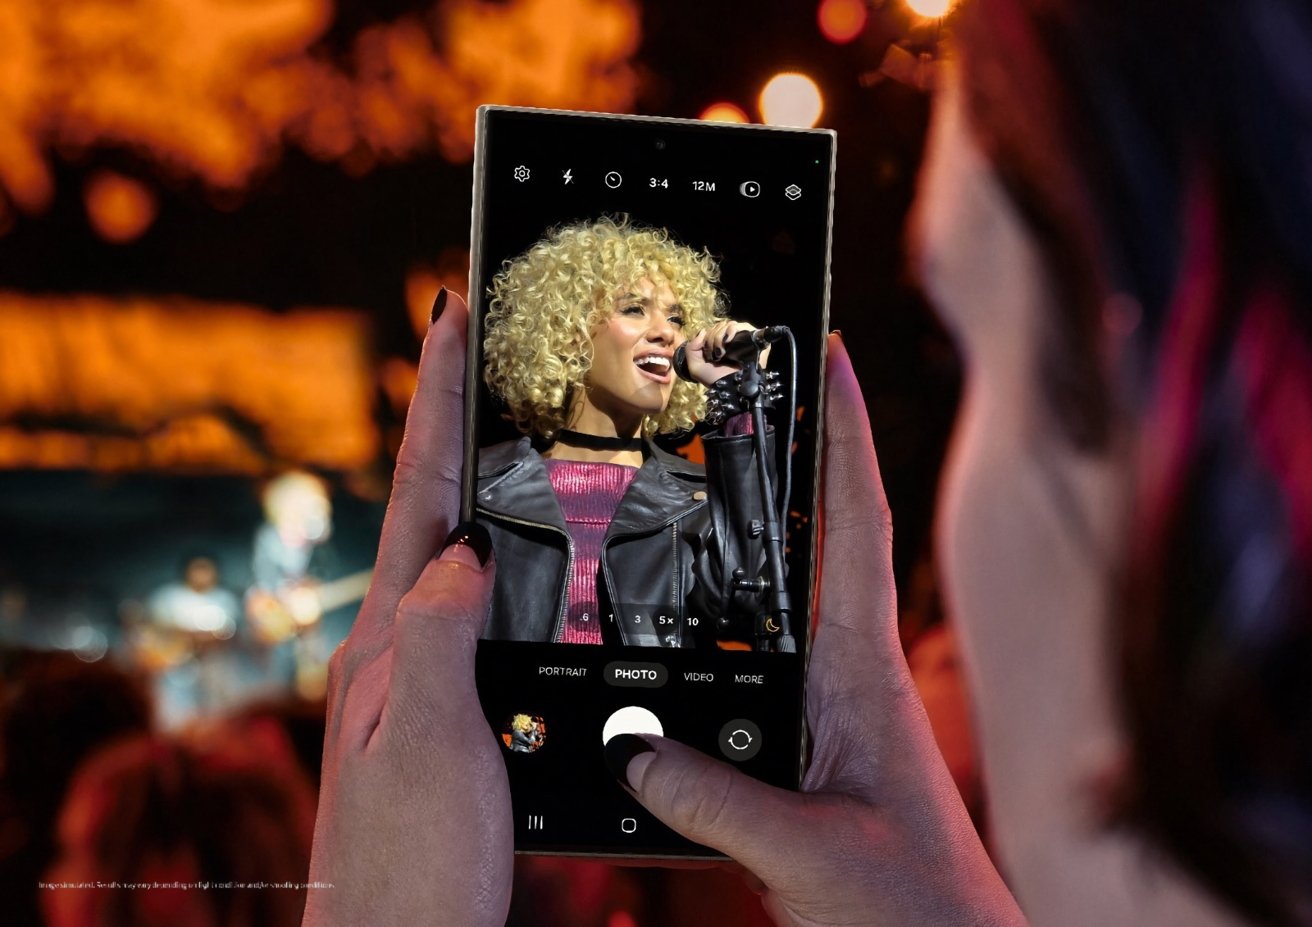 Руки держат смартфон, на котором запечатлено выступление певца на сцене, видно через экран камеры телефона, на фоне размытой публики.